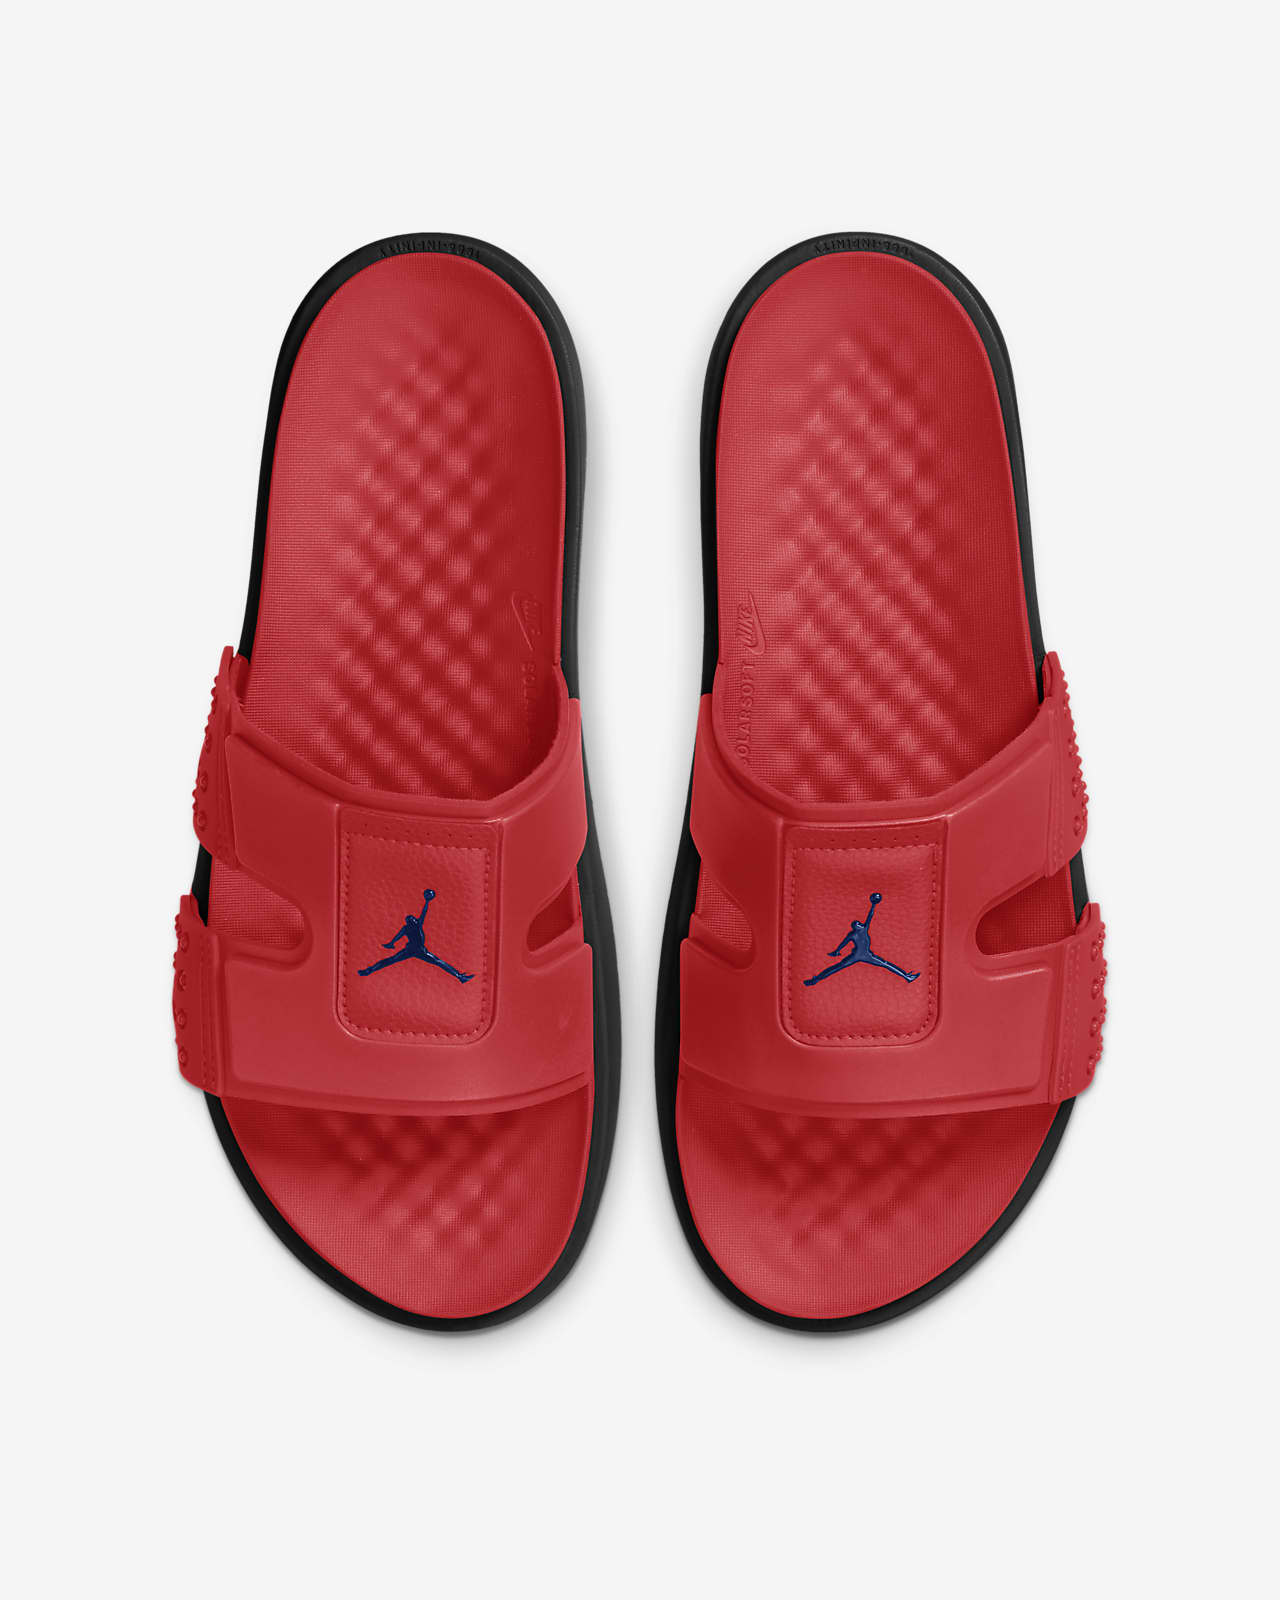 Jordan Hydro 8 拖鞋。Nike TW